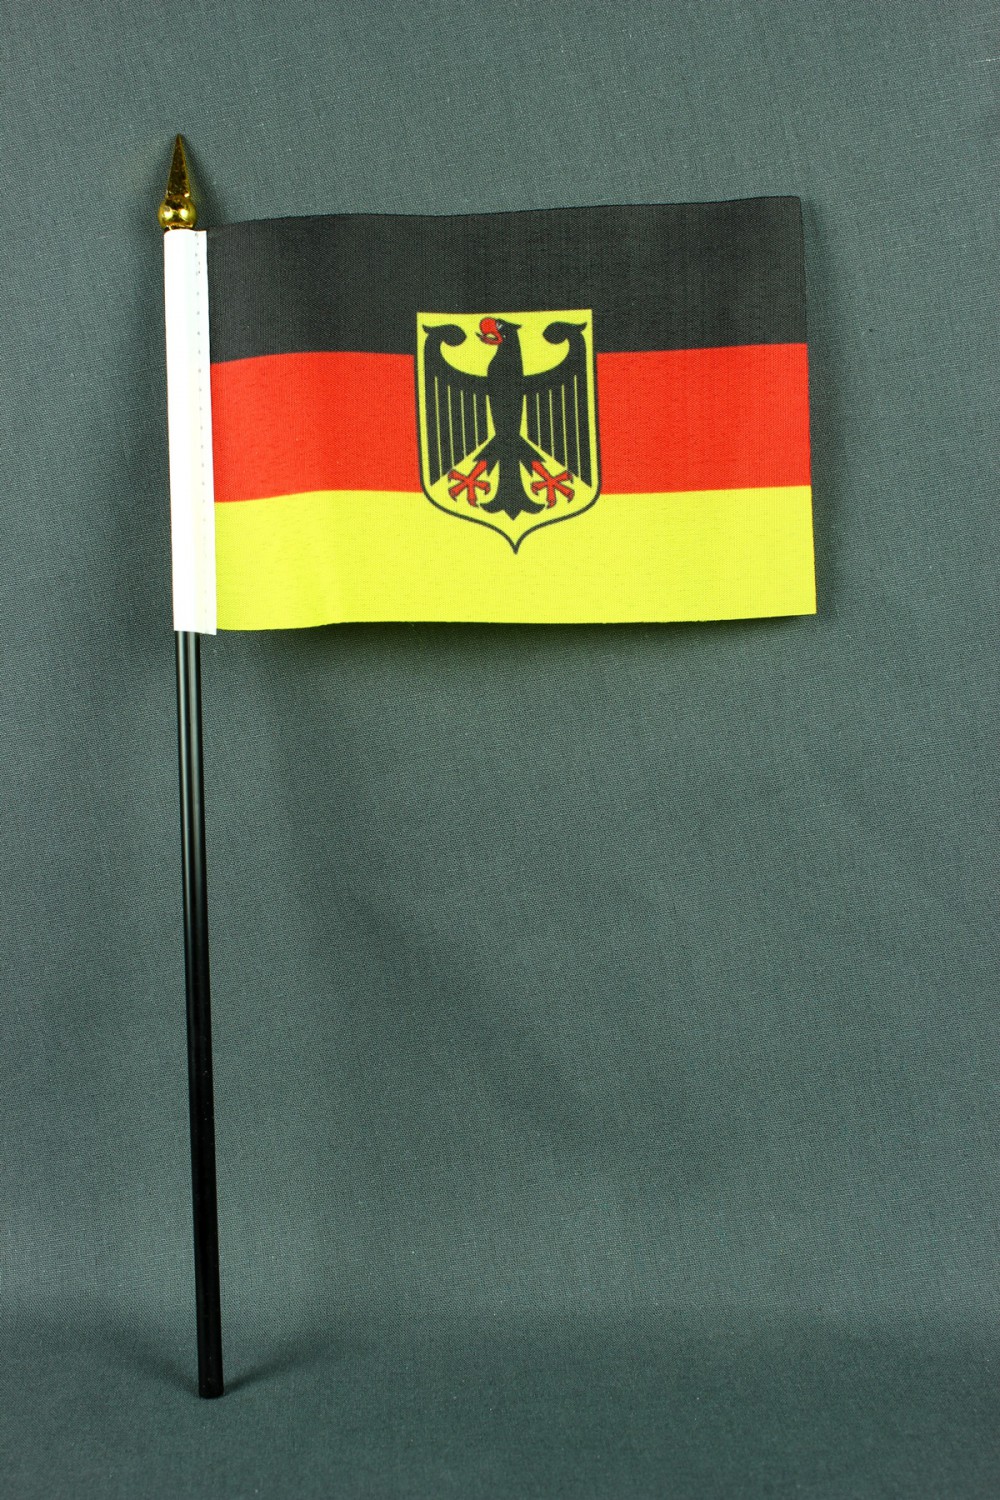 https://www.buddelbini.de/media/image/87/09/1a/tischfahne-deutschland-bundesdienstflagge.jpg